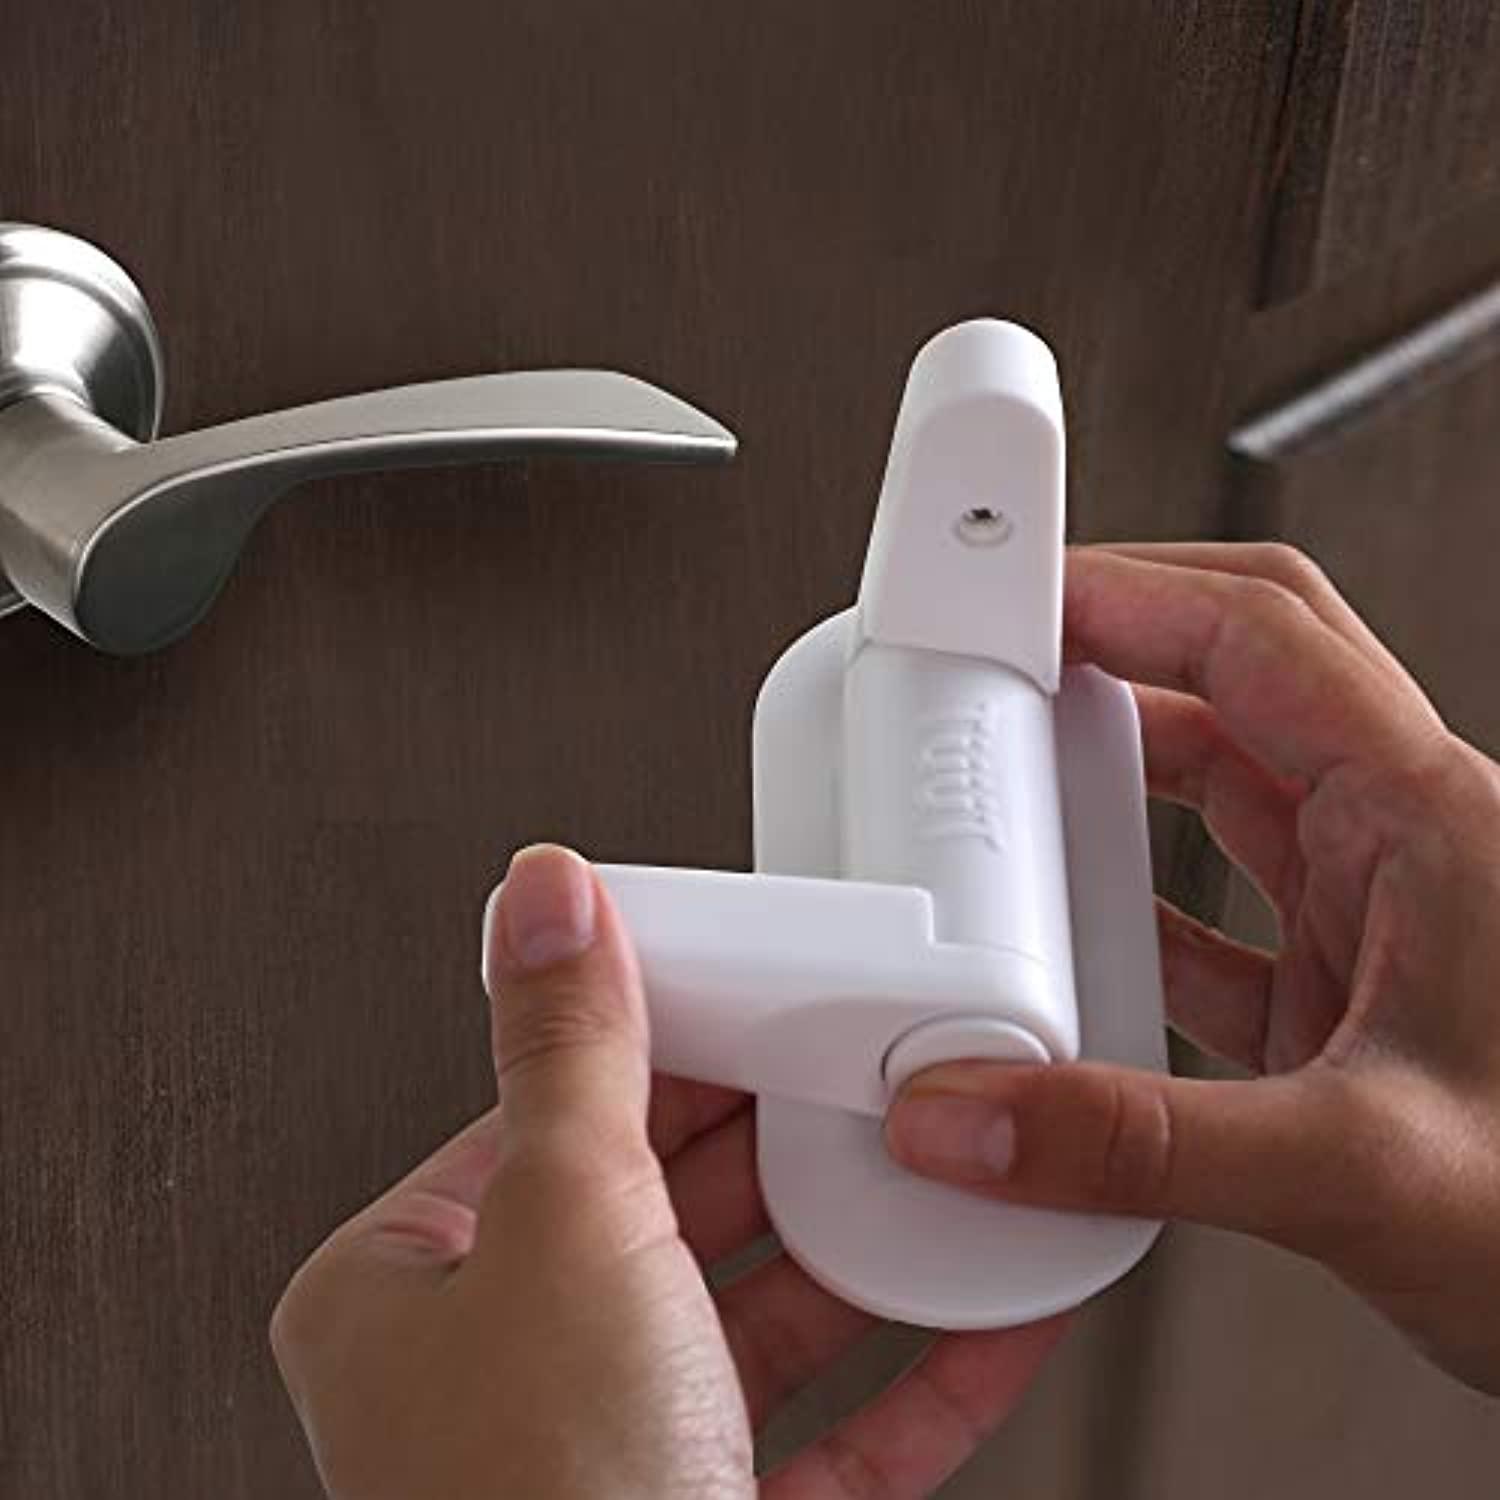 DOOR LOCK FOR Kids Adhesive Childproof Baby Safety Door Handle